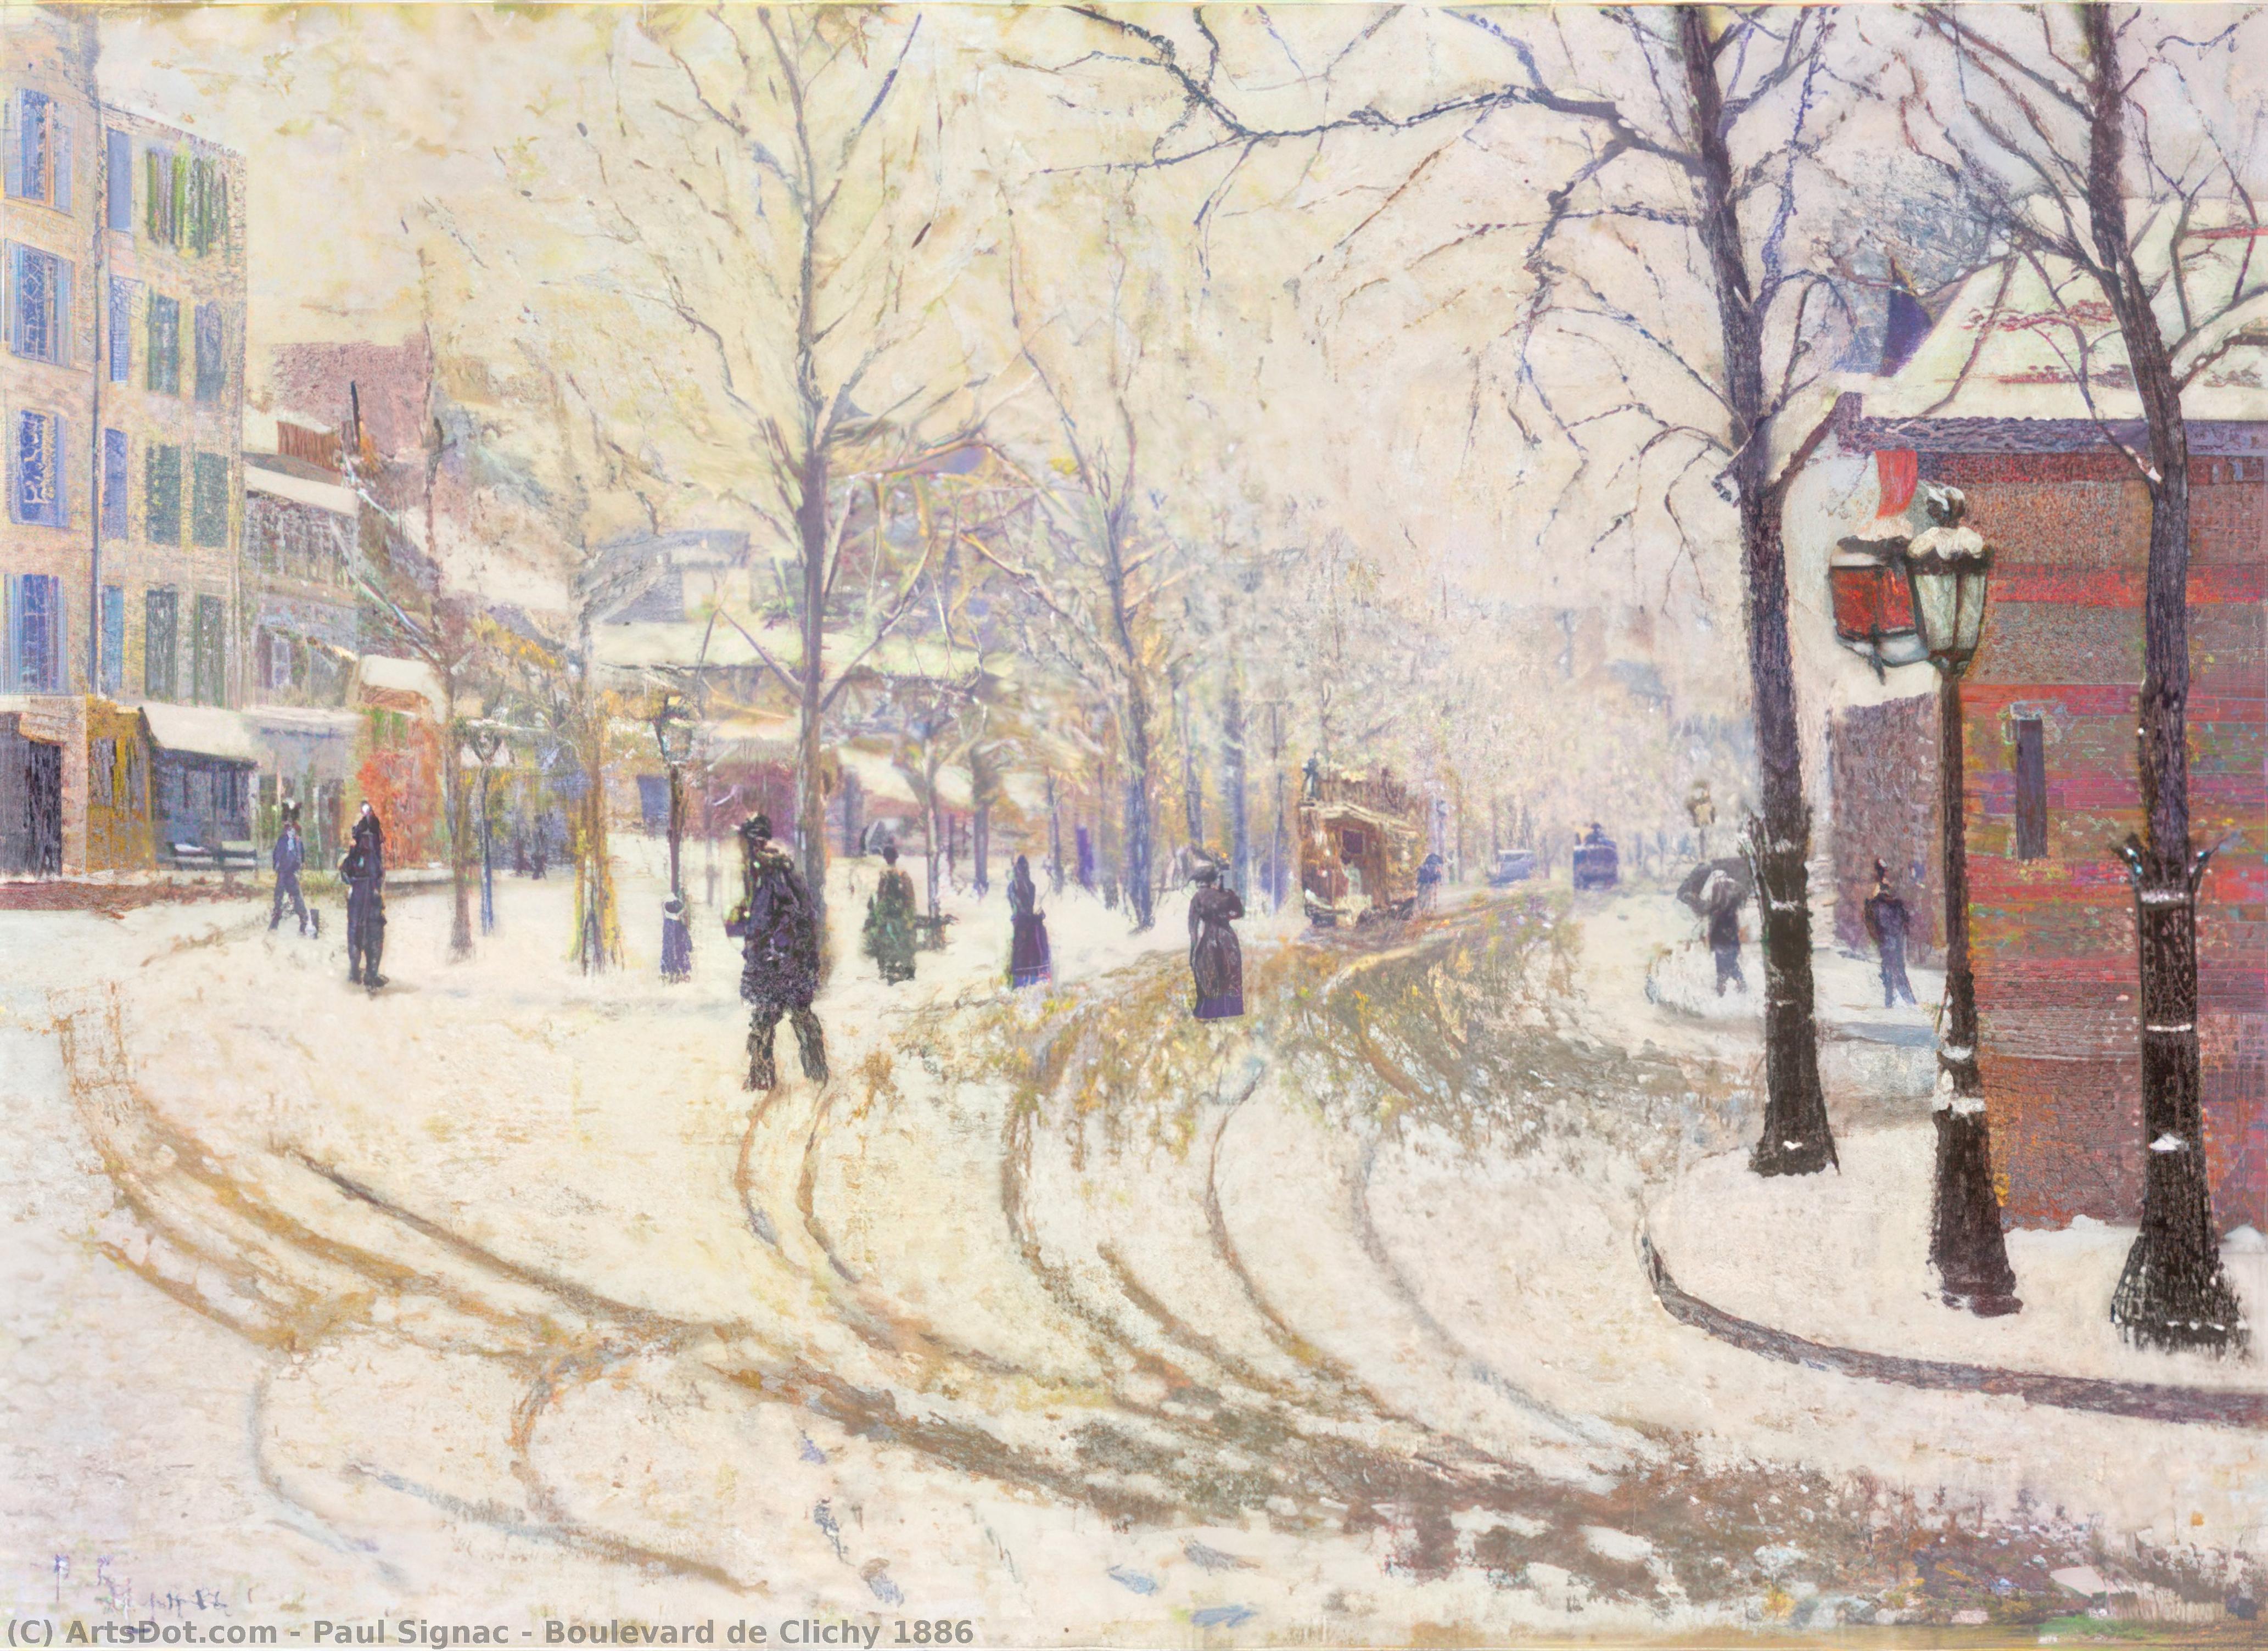  Art Reproductions Boulevard de Clichy 1886, 1886 by Paul Signac (1863-1935, France) | ArtsDot.com